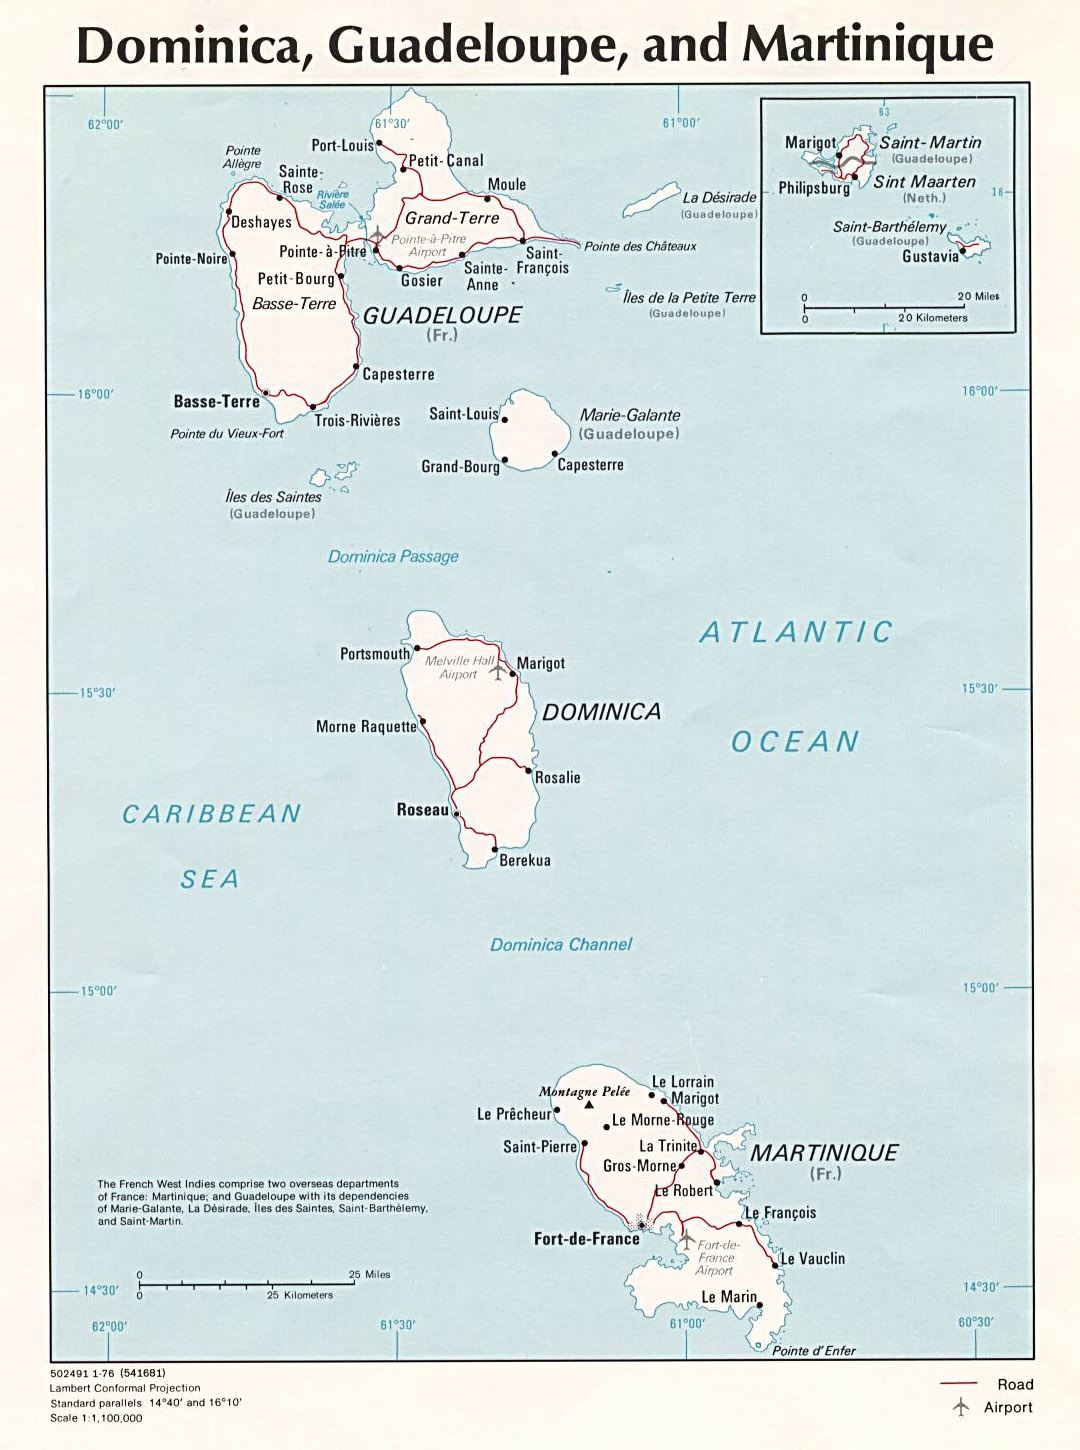 Большая политическая карта Доминики, Гваделупы и Мартиники с другими пометками - 1976